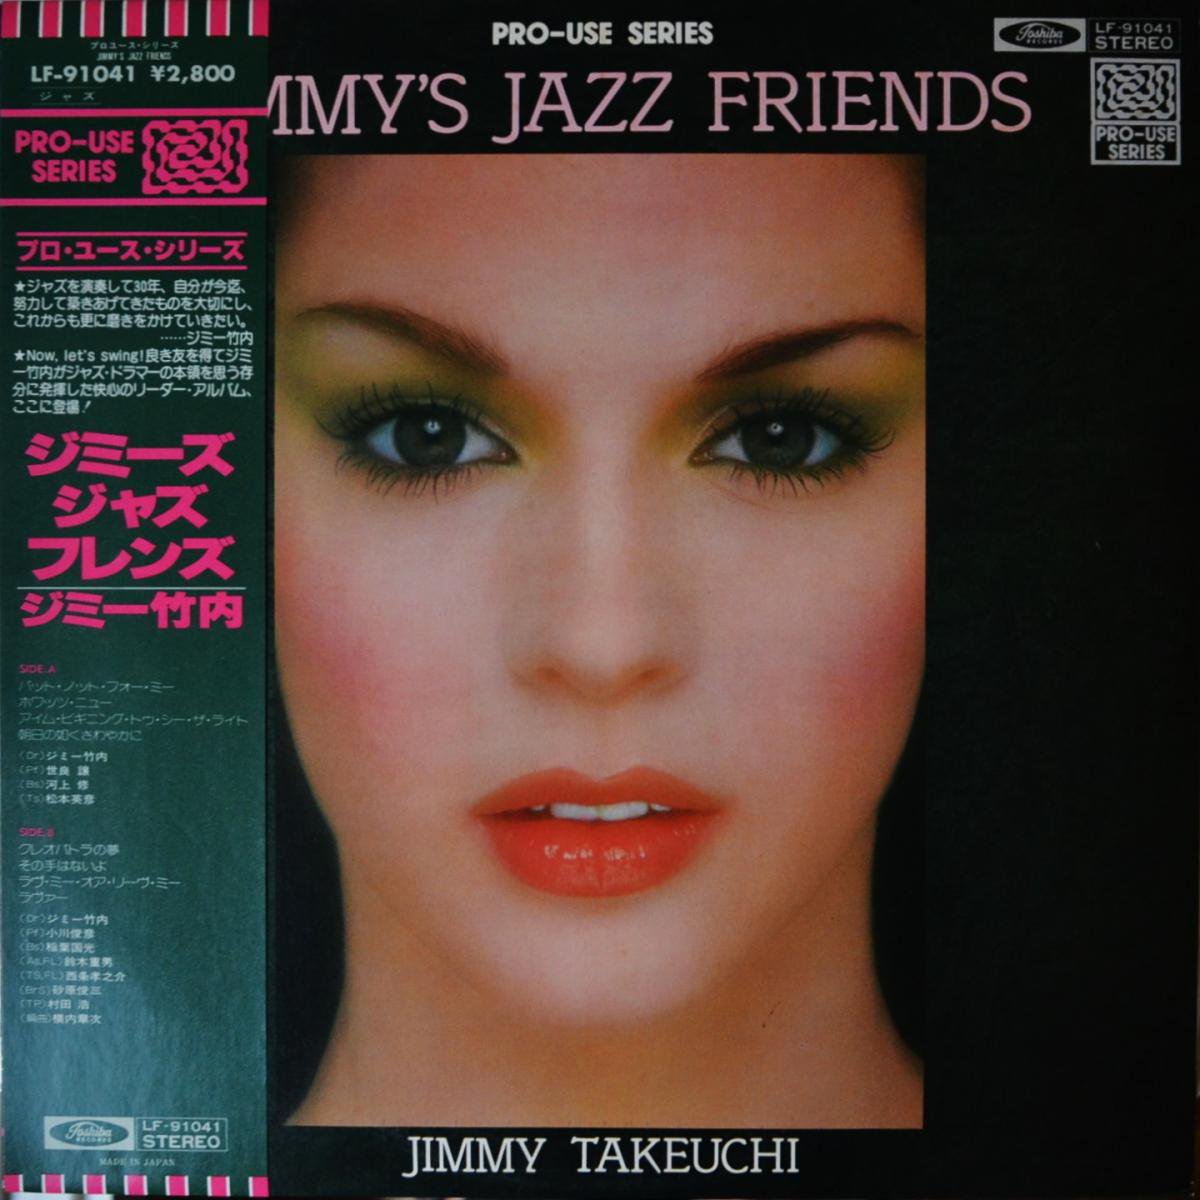 ジミー竹内 JIMMY TAKEUCHI / ジミーズ・ジャズ・フレンズ JIMM'S JAZZ FRIENDS (LP)